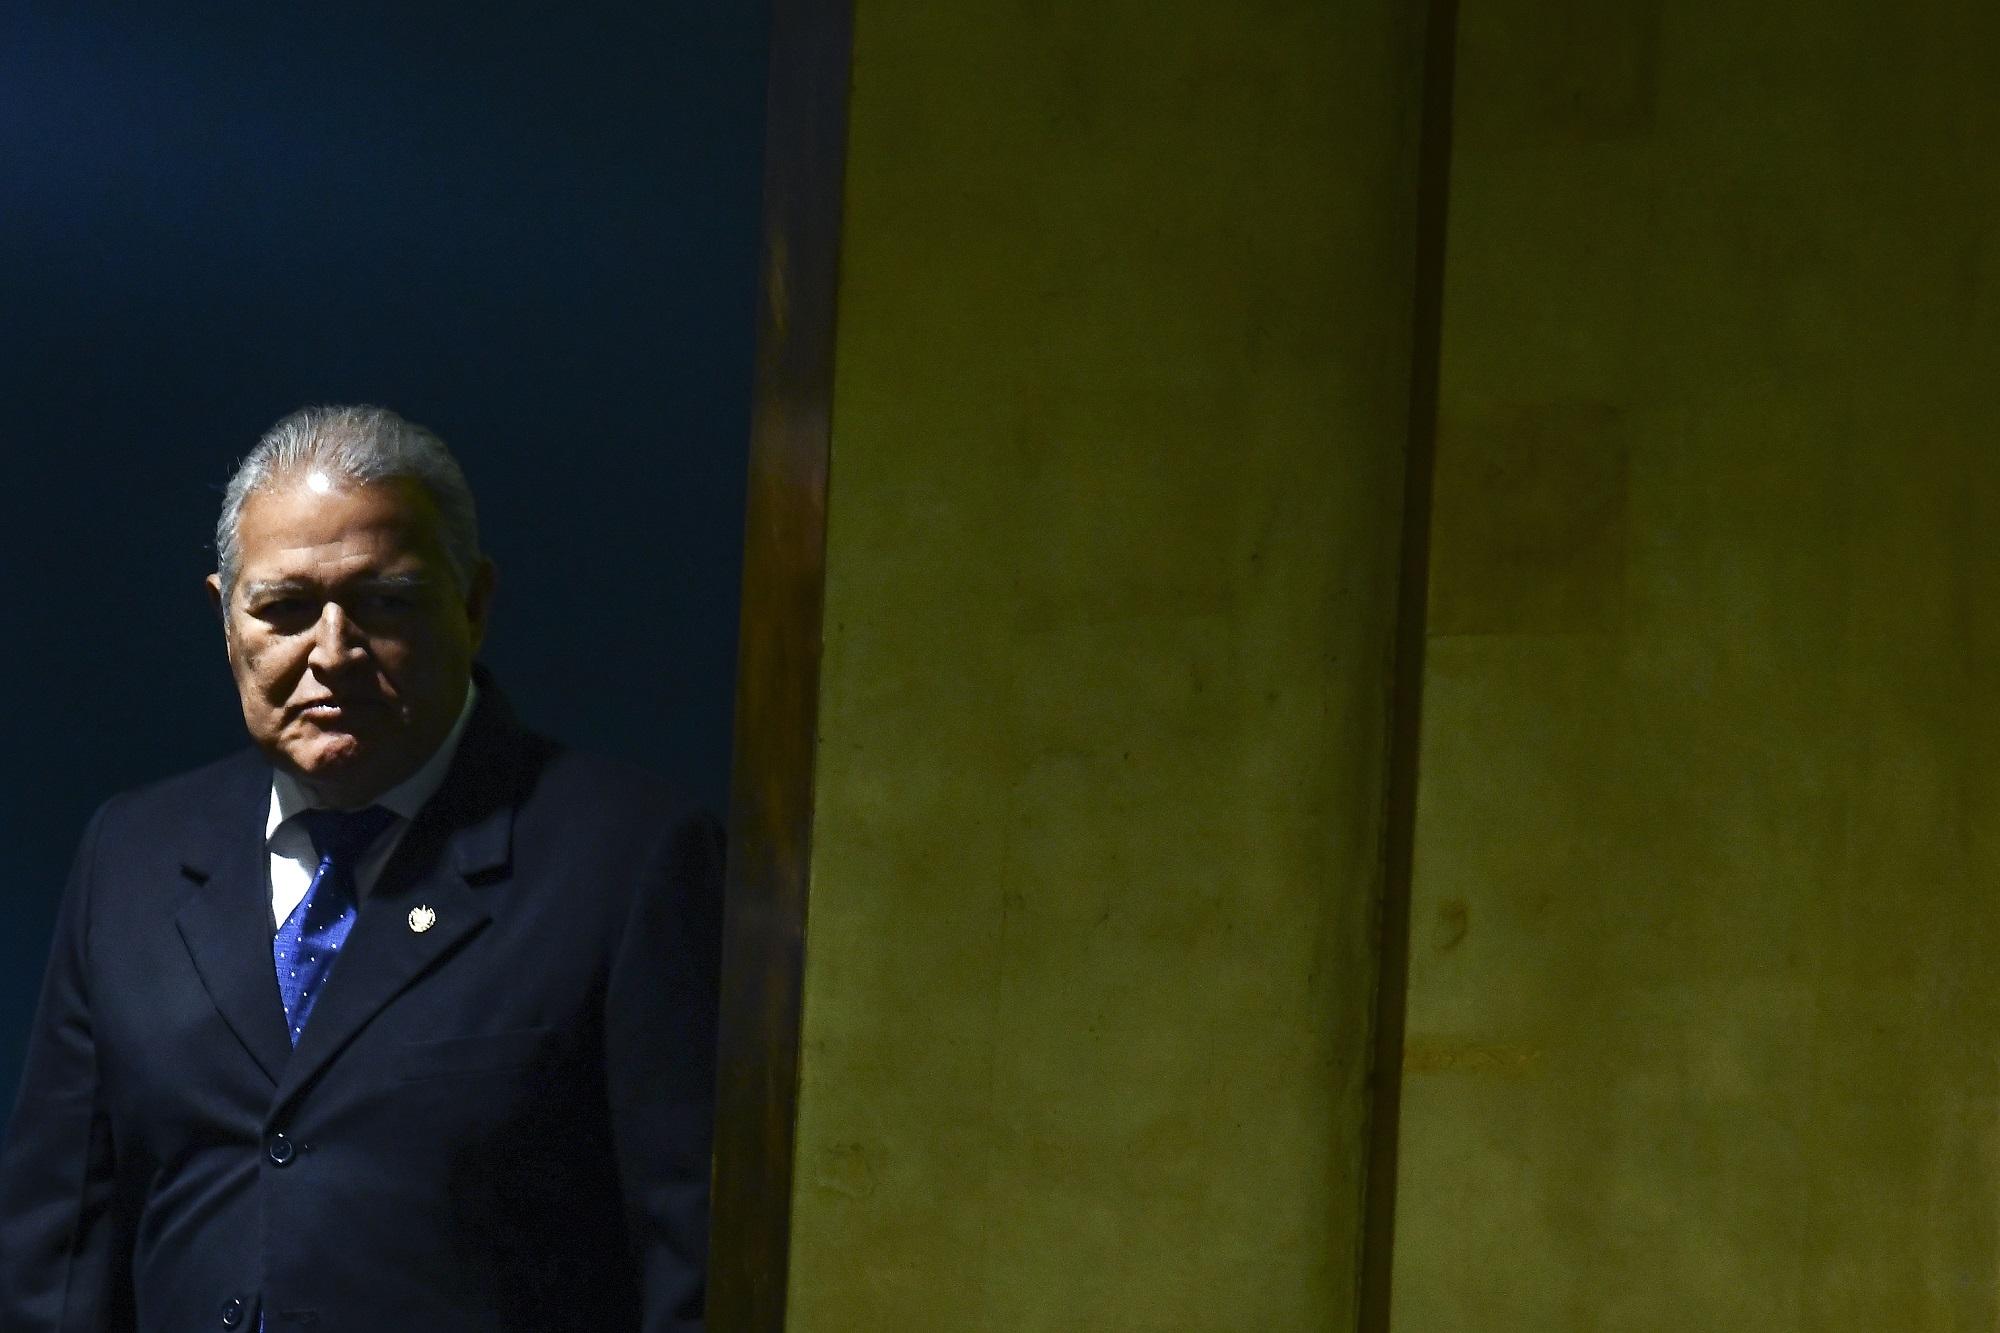 El presidente Salvador Sánchez Cerén, fotografiado en la sede de Naciones Unidas, en Nueva York, el 21 de septiembre de 2017. Foto: AFP/Jewel Samad